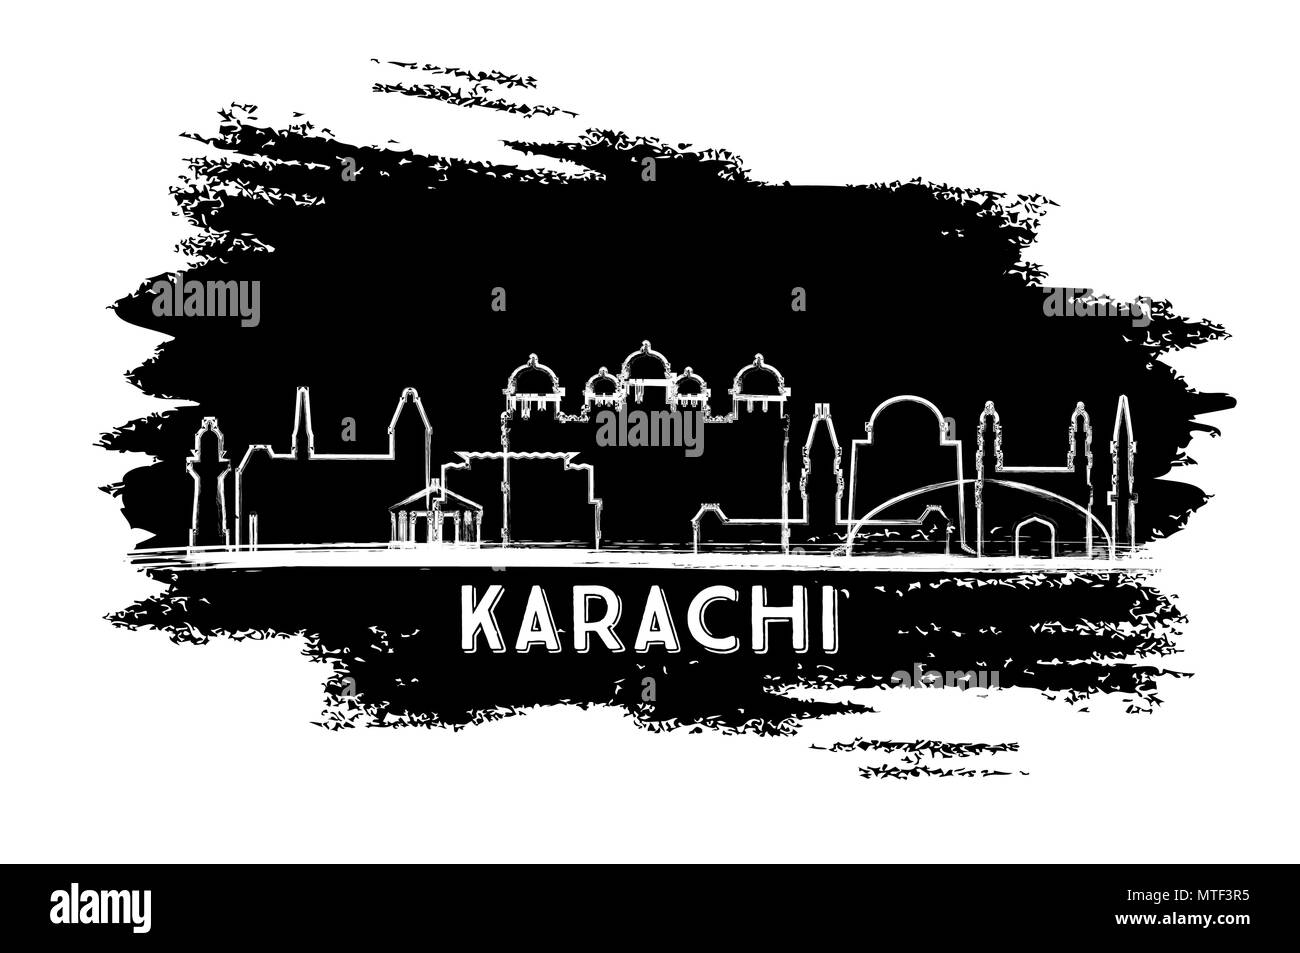 Karachi Pakistan Ville Silhouette. Croquis dessinés à la main. Les voyages d'affaires et tourisme Concept avec l'architecture historique. Vector Illustration Illustration de Vecteur